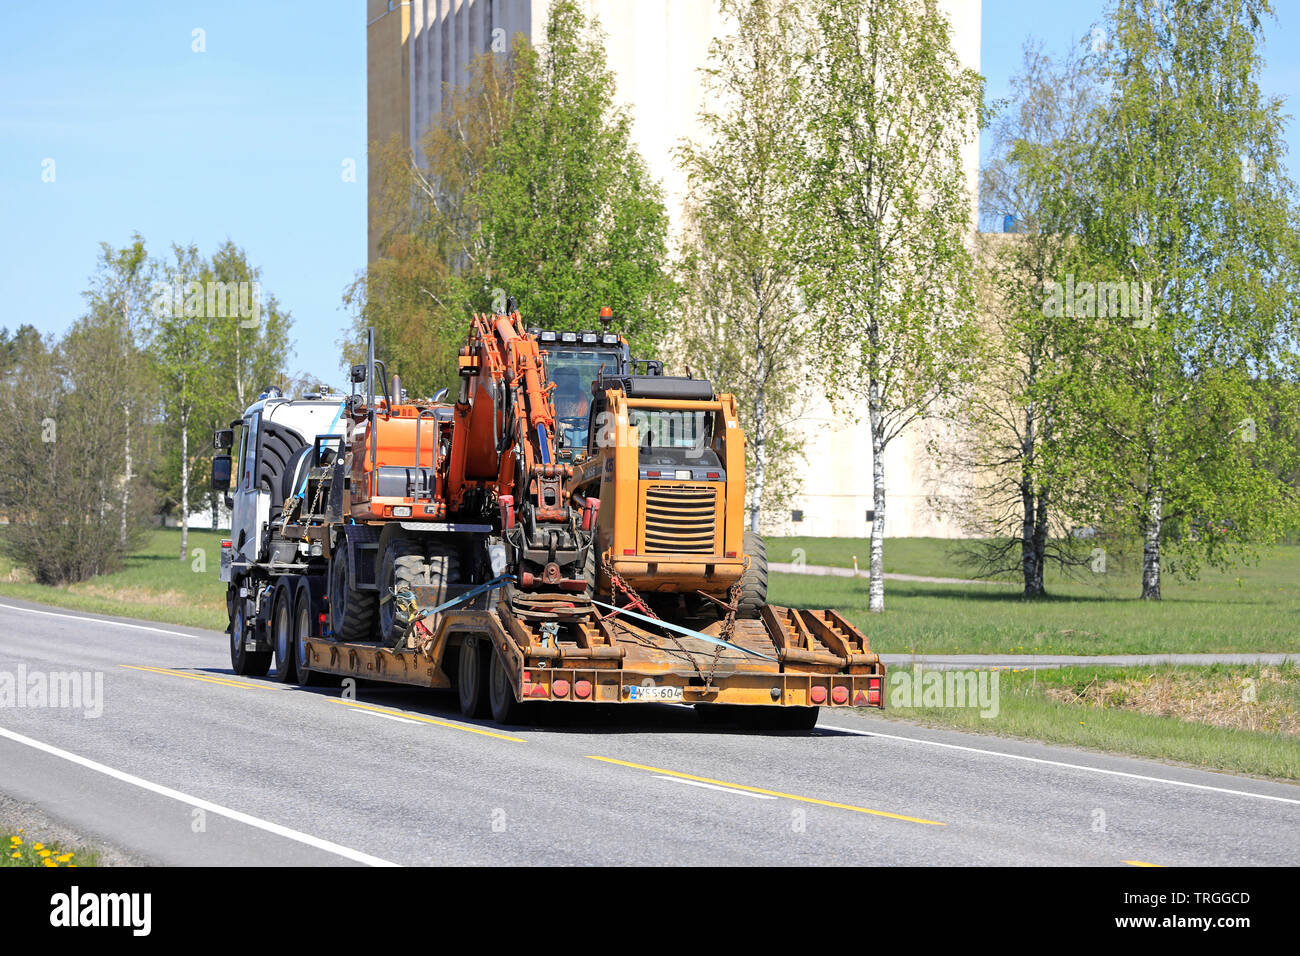 Salo, Finnland - 17. Mai 2019: Renault Trucks semi schleppt eine große Last von Baumaschinen auf Anhänger entlang der Straße an einem Tag im Frühling, Ansicht von hinten. Stockfoto